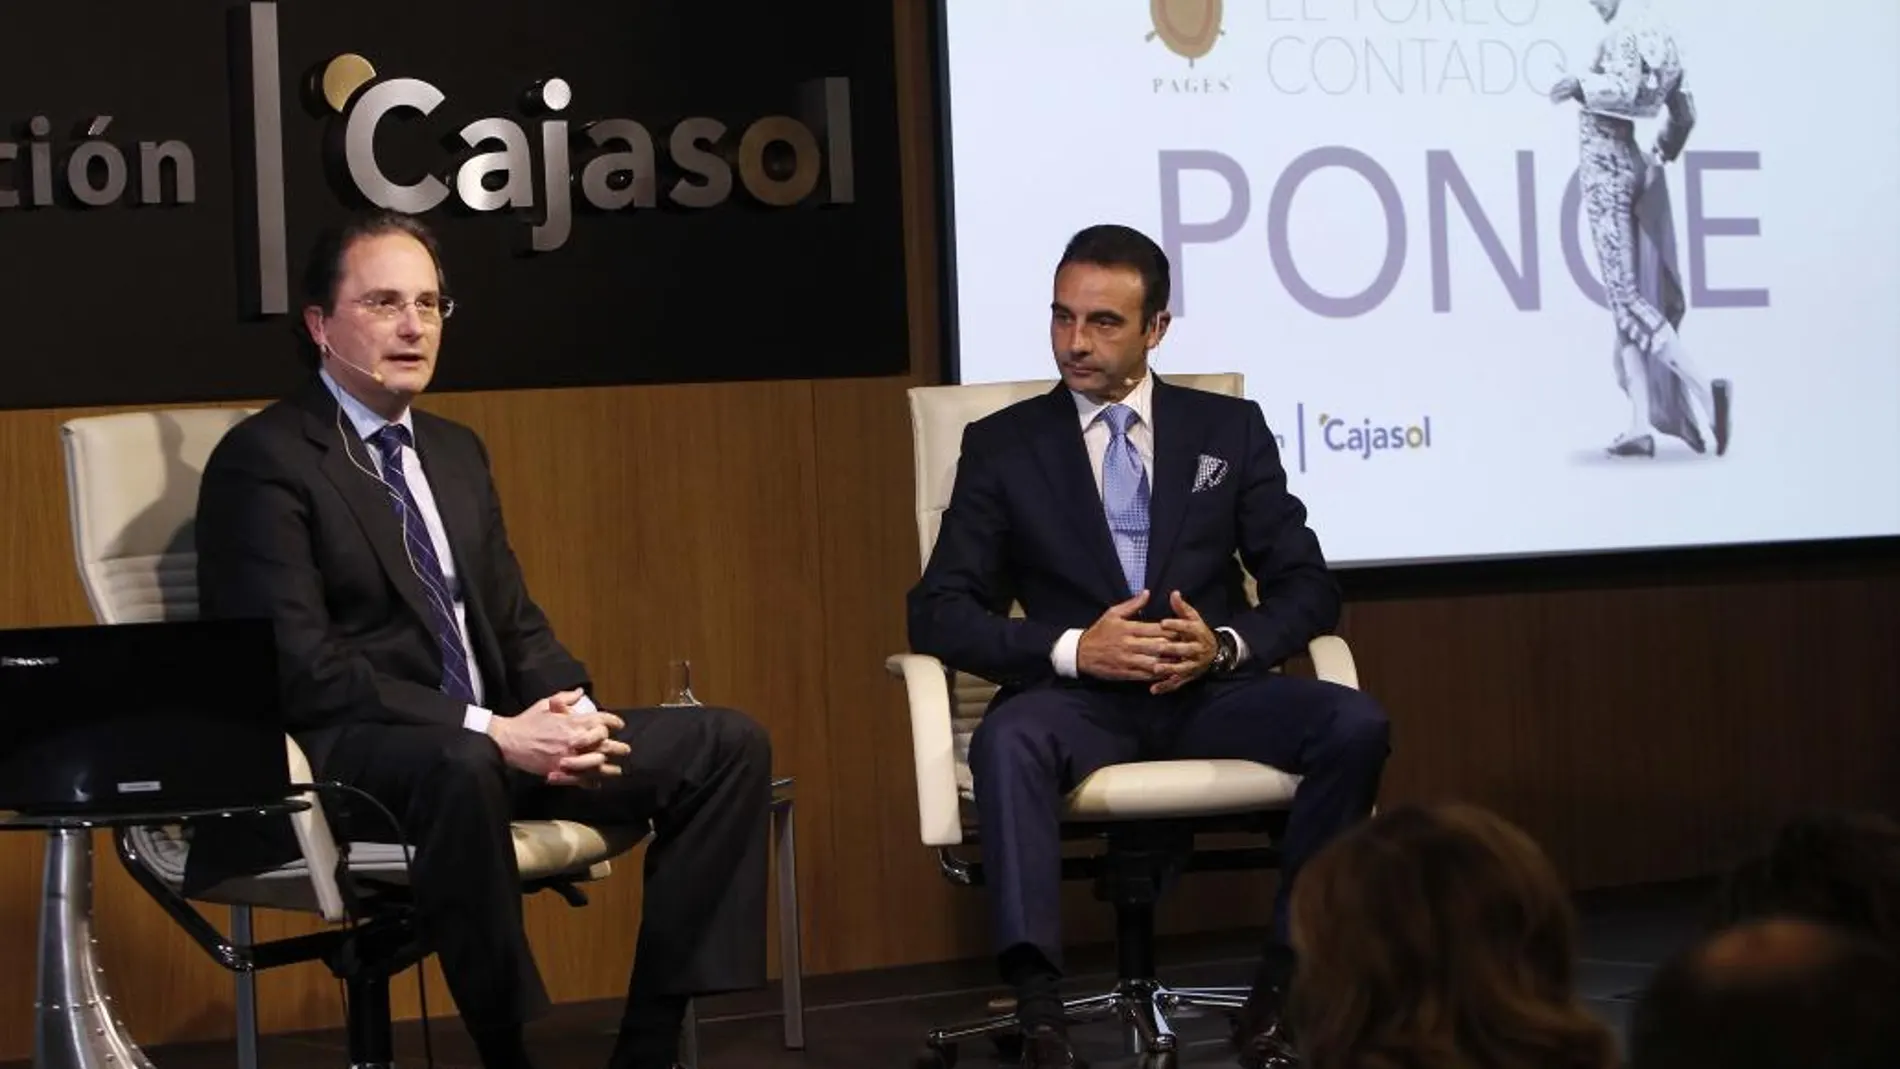 José Enrique Moreno y Enrique Ponce, ayer en la sede de la Fundación Cajasol